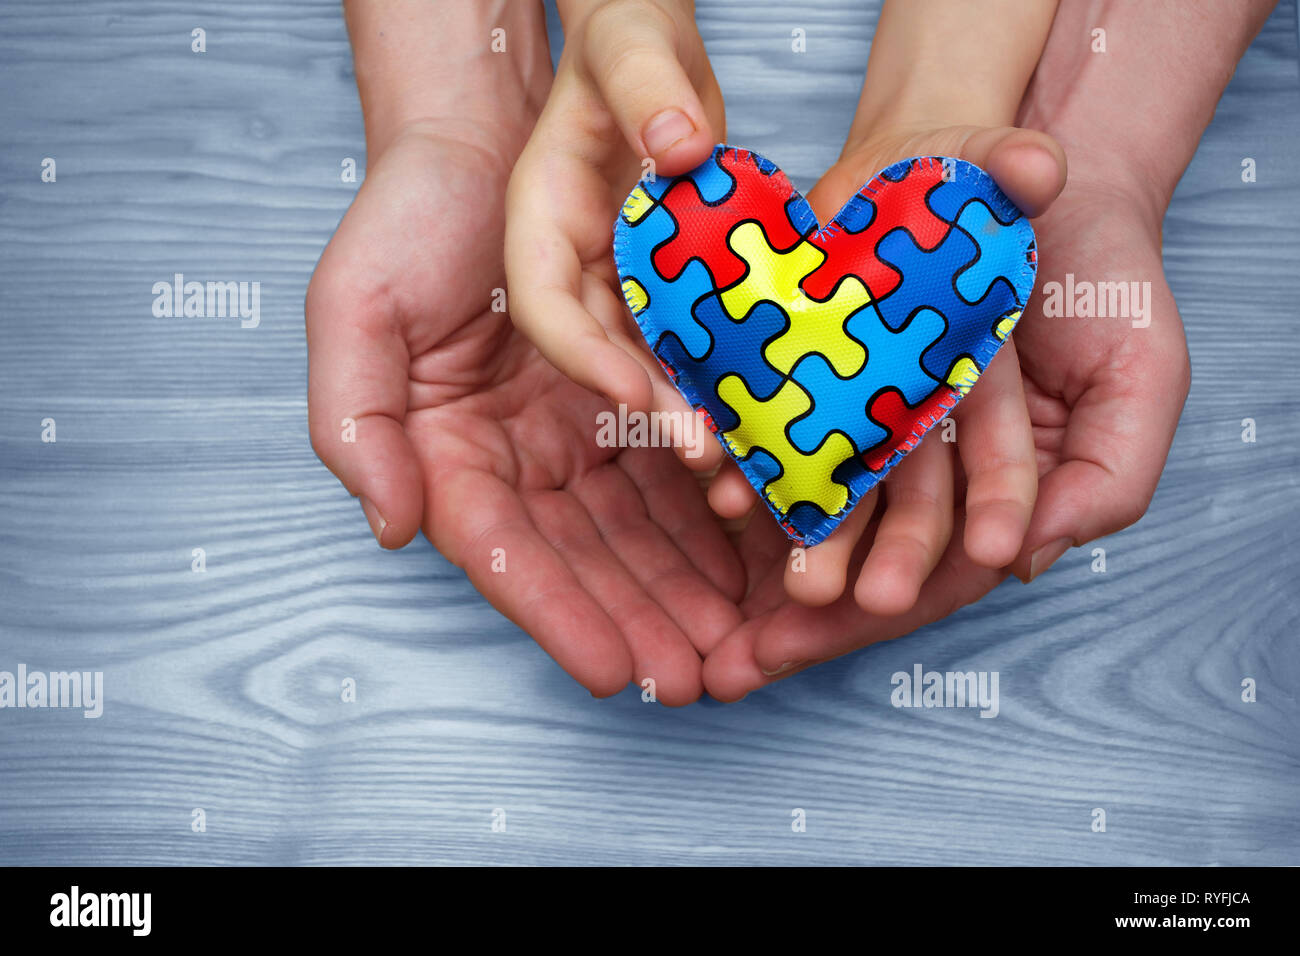 Welt Autismus Bewußtsein Tag, Puzzle oder Stichsäge Muster auf Herz mit autistischen Kind und Vater Hände Stockfoto